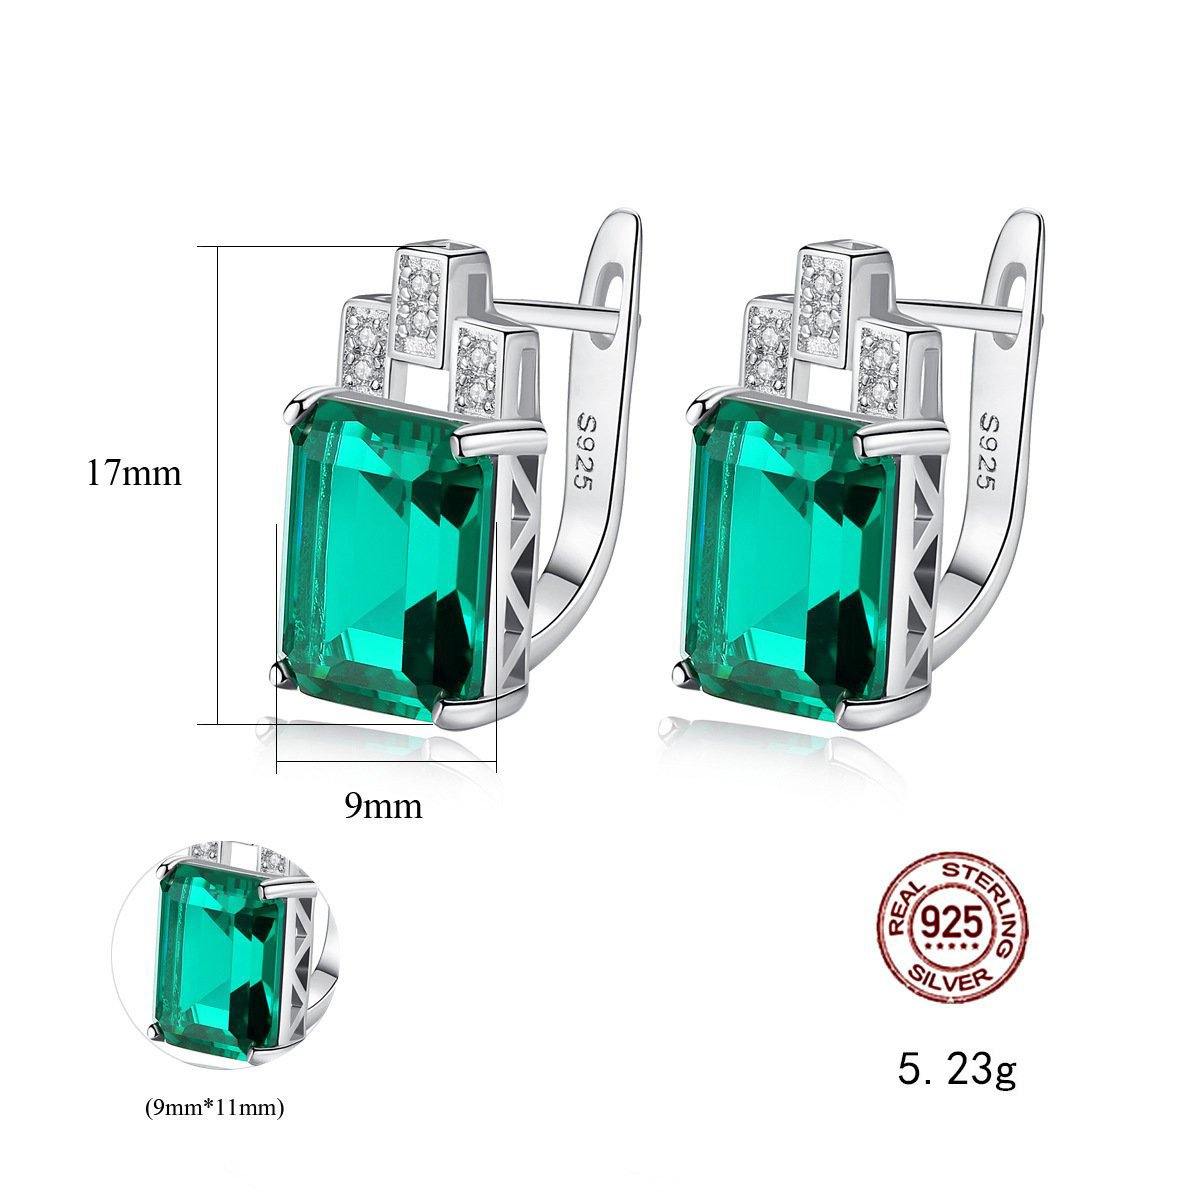 Emerald Earrings - HERS